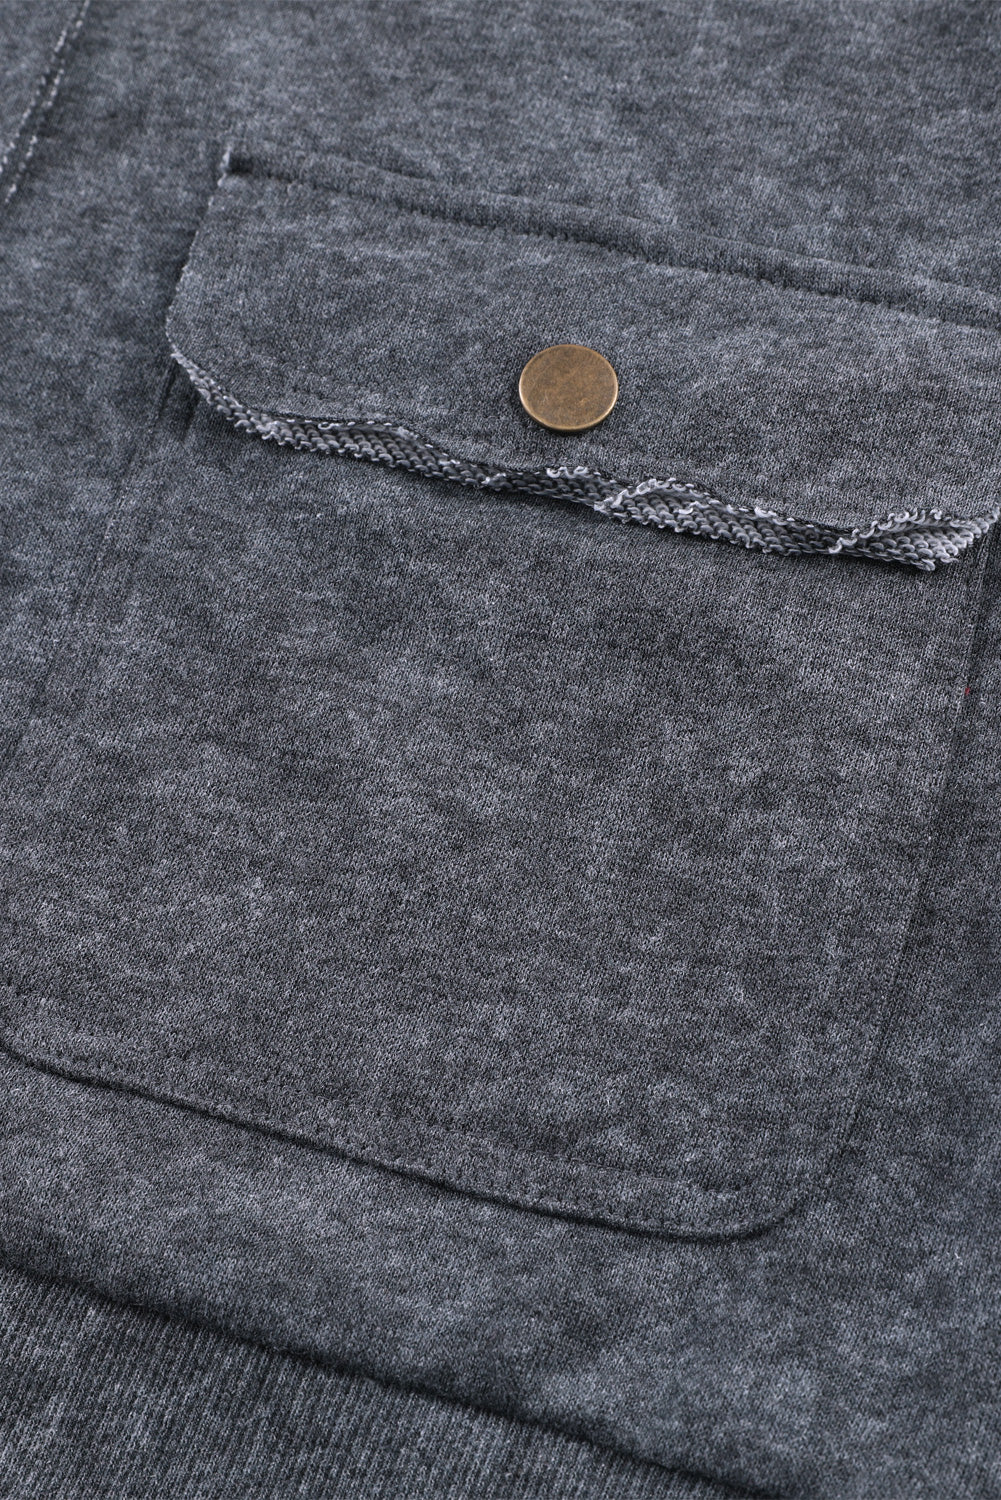 Graue Vintage-Jacke mit Knopfleiste und verwaschener Patte